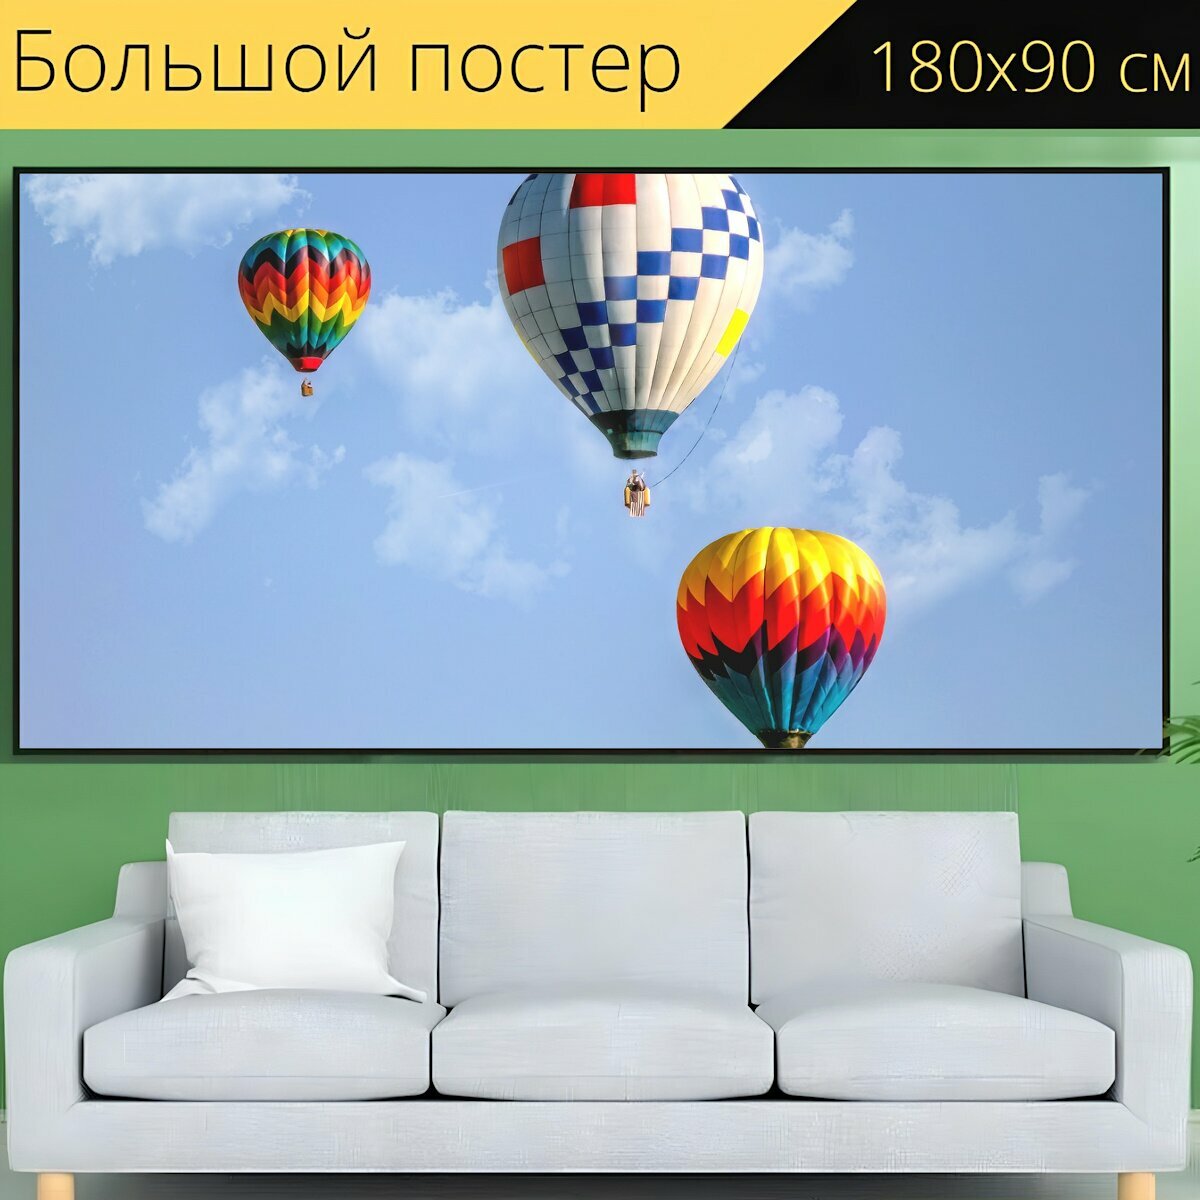 Большой постер "Надувные шарики, горячим воздухом, воздушные шары" 180 x 90 см. для интерьера